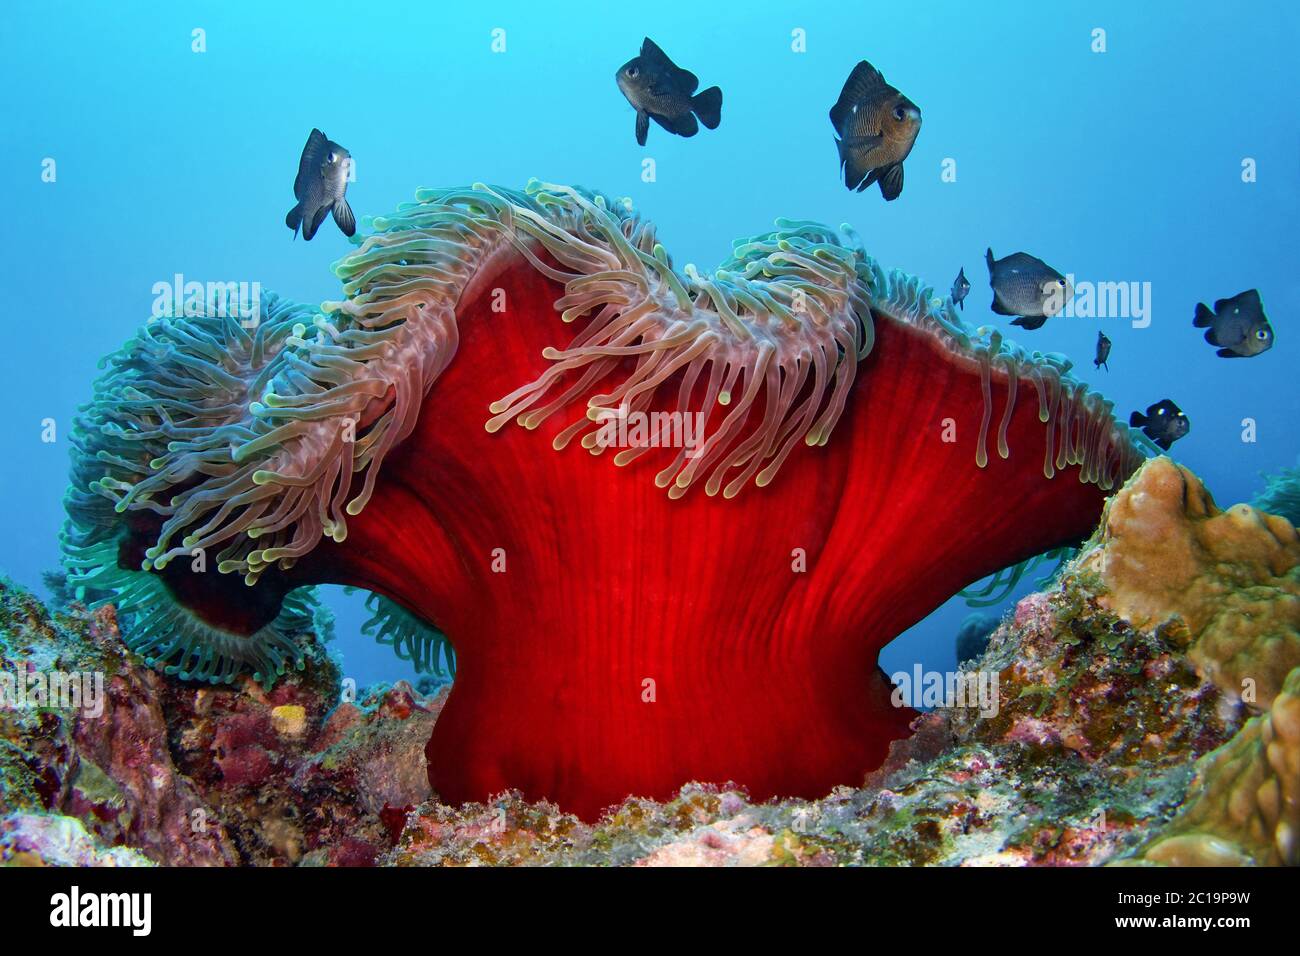 Magnificent sea anemone (with Threespot dascyllus) - Heteractis magnifica (with Dascyllus trimaculatus) Stock Photo